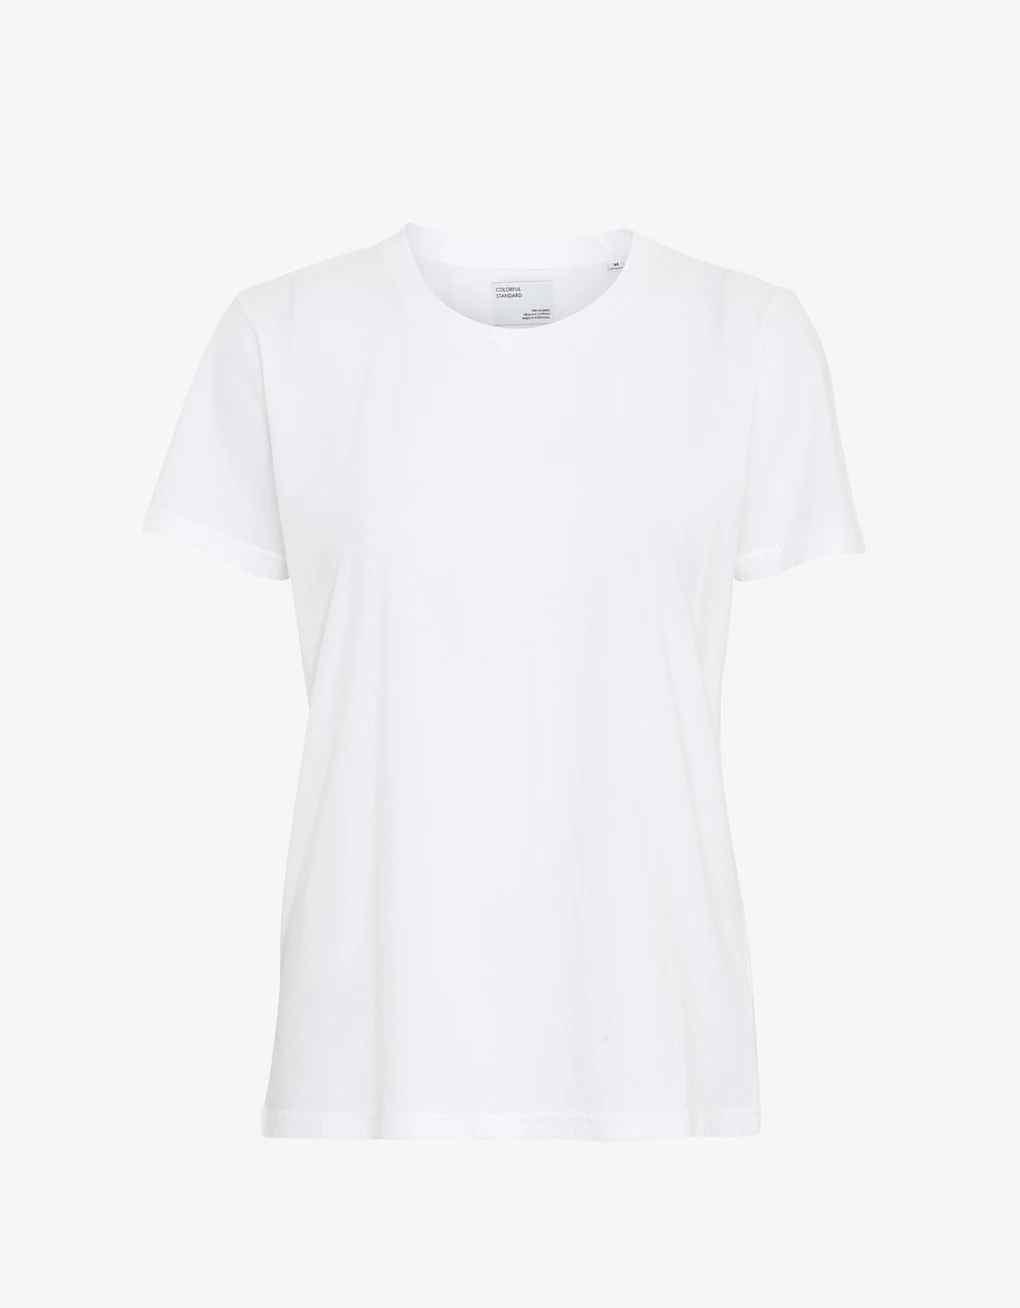 Camiseta Ligera de Mujer Orgánica Blanca - ECRU